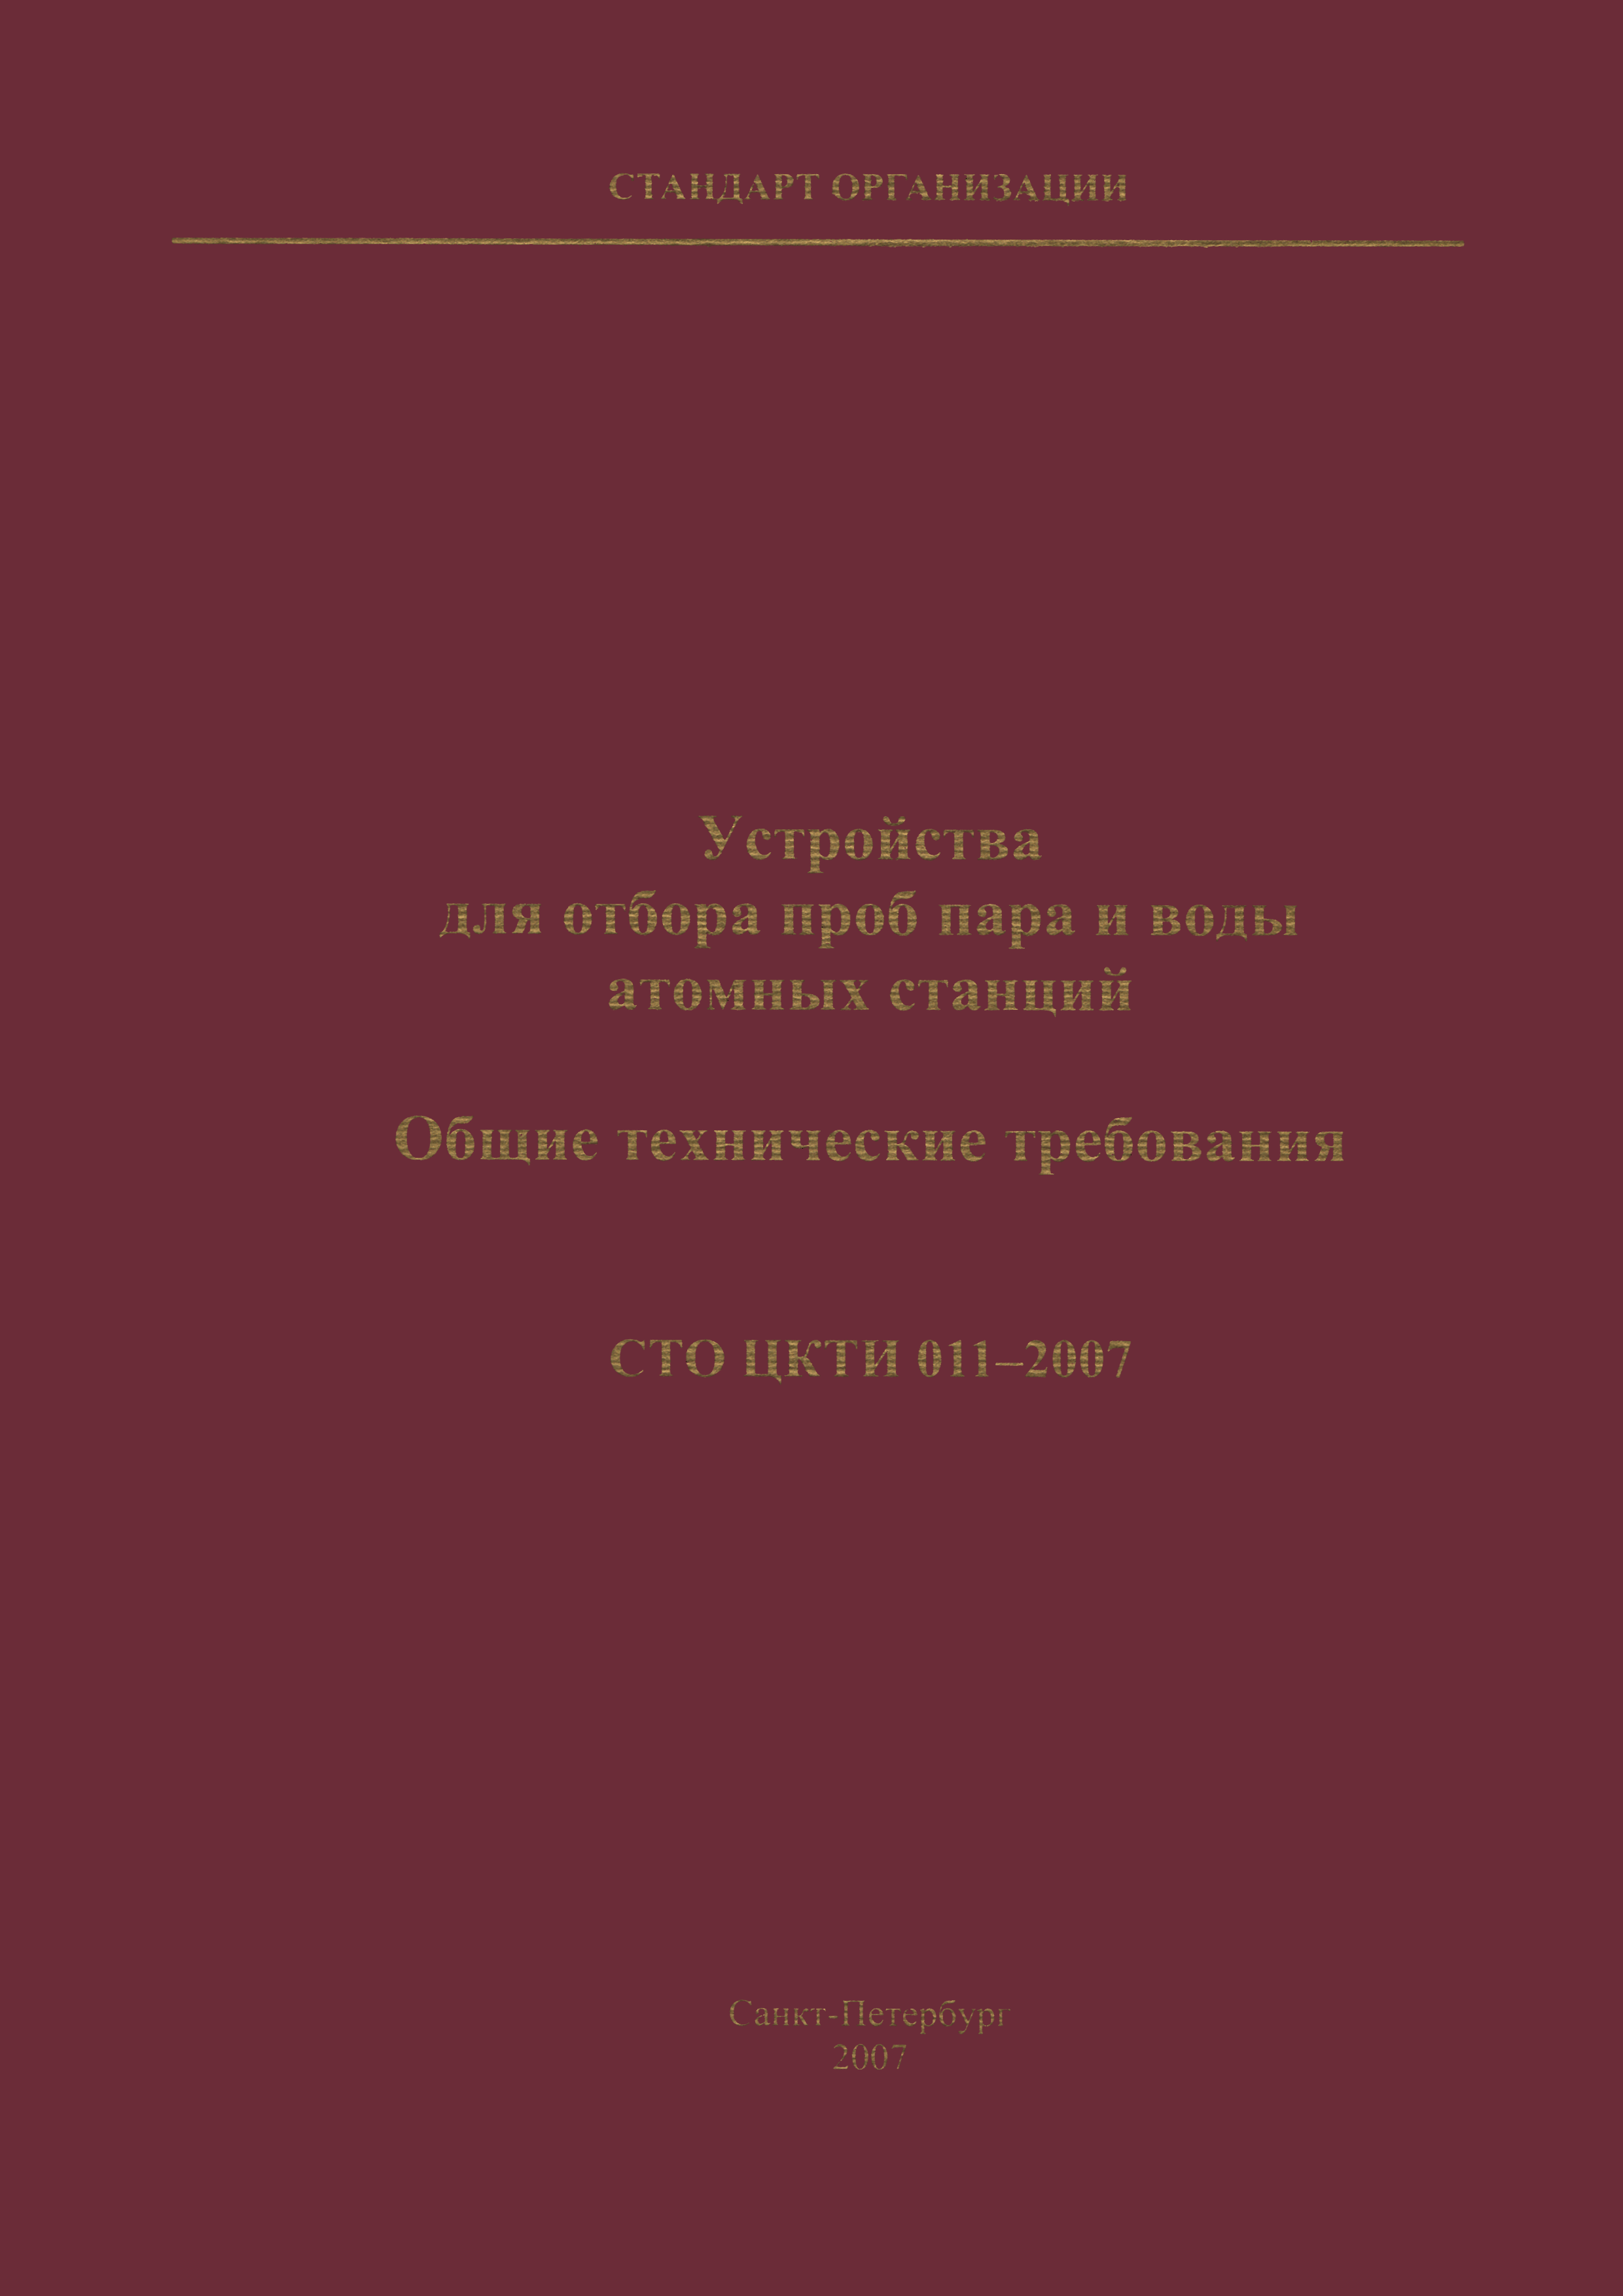 СТО ЦКТИ 011-2007